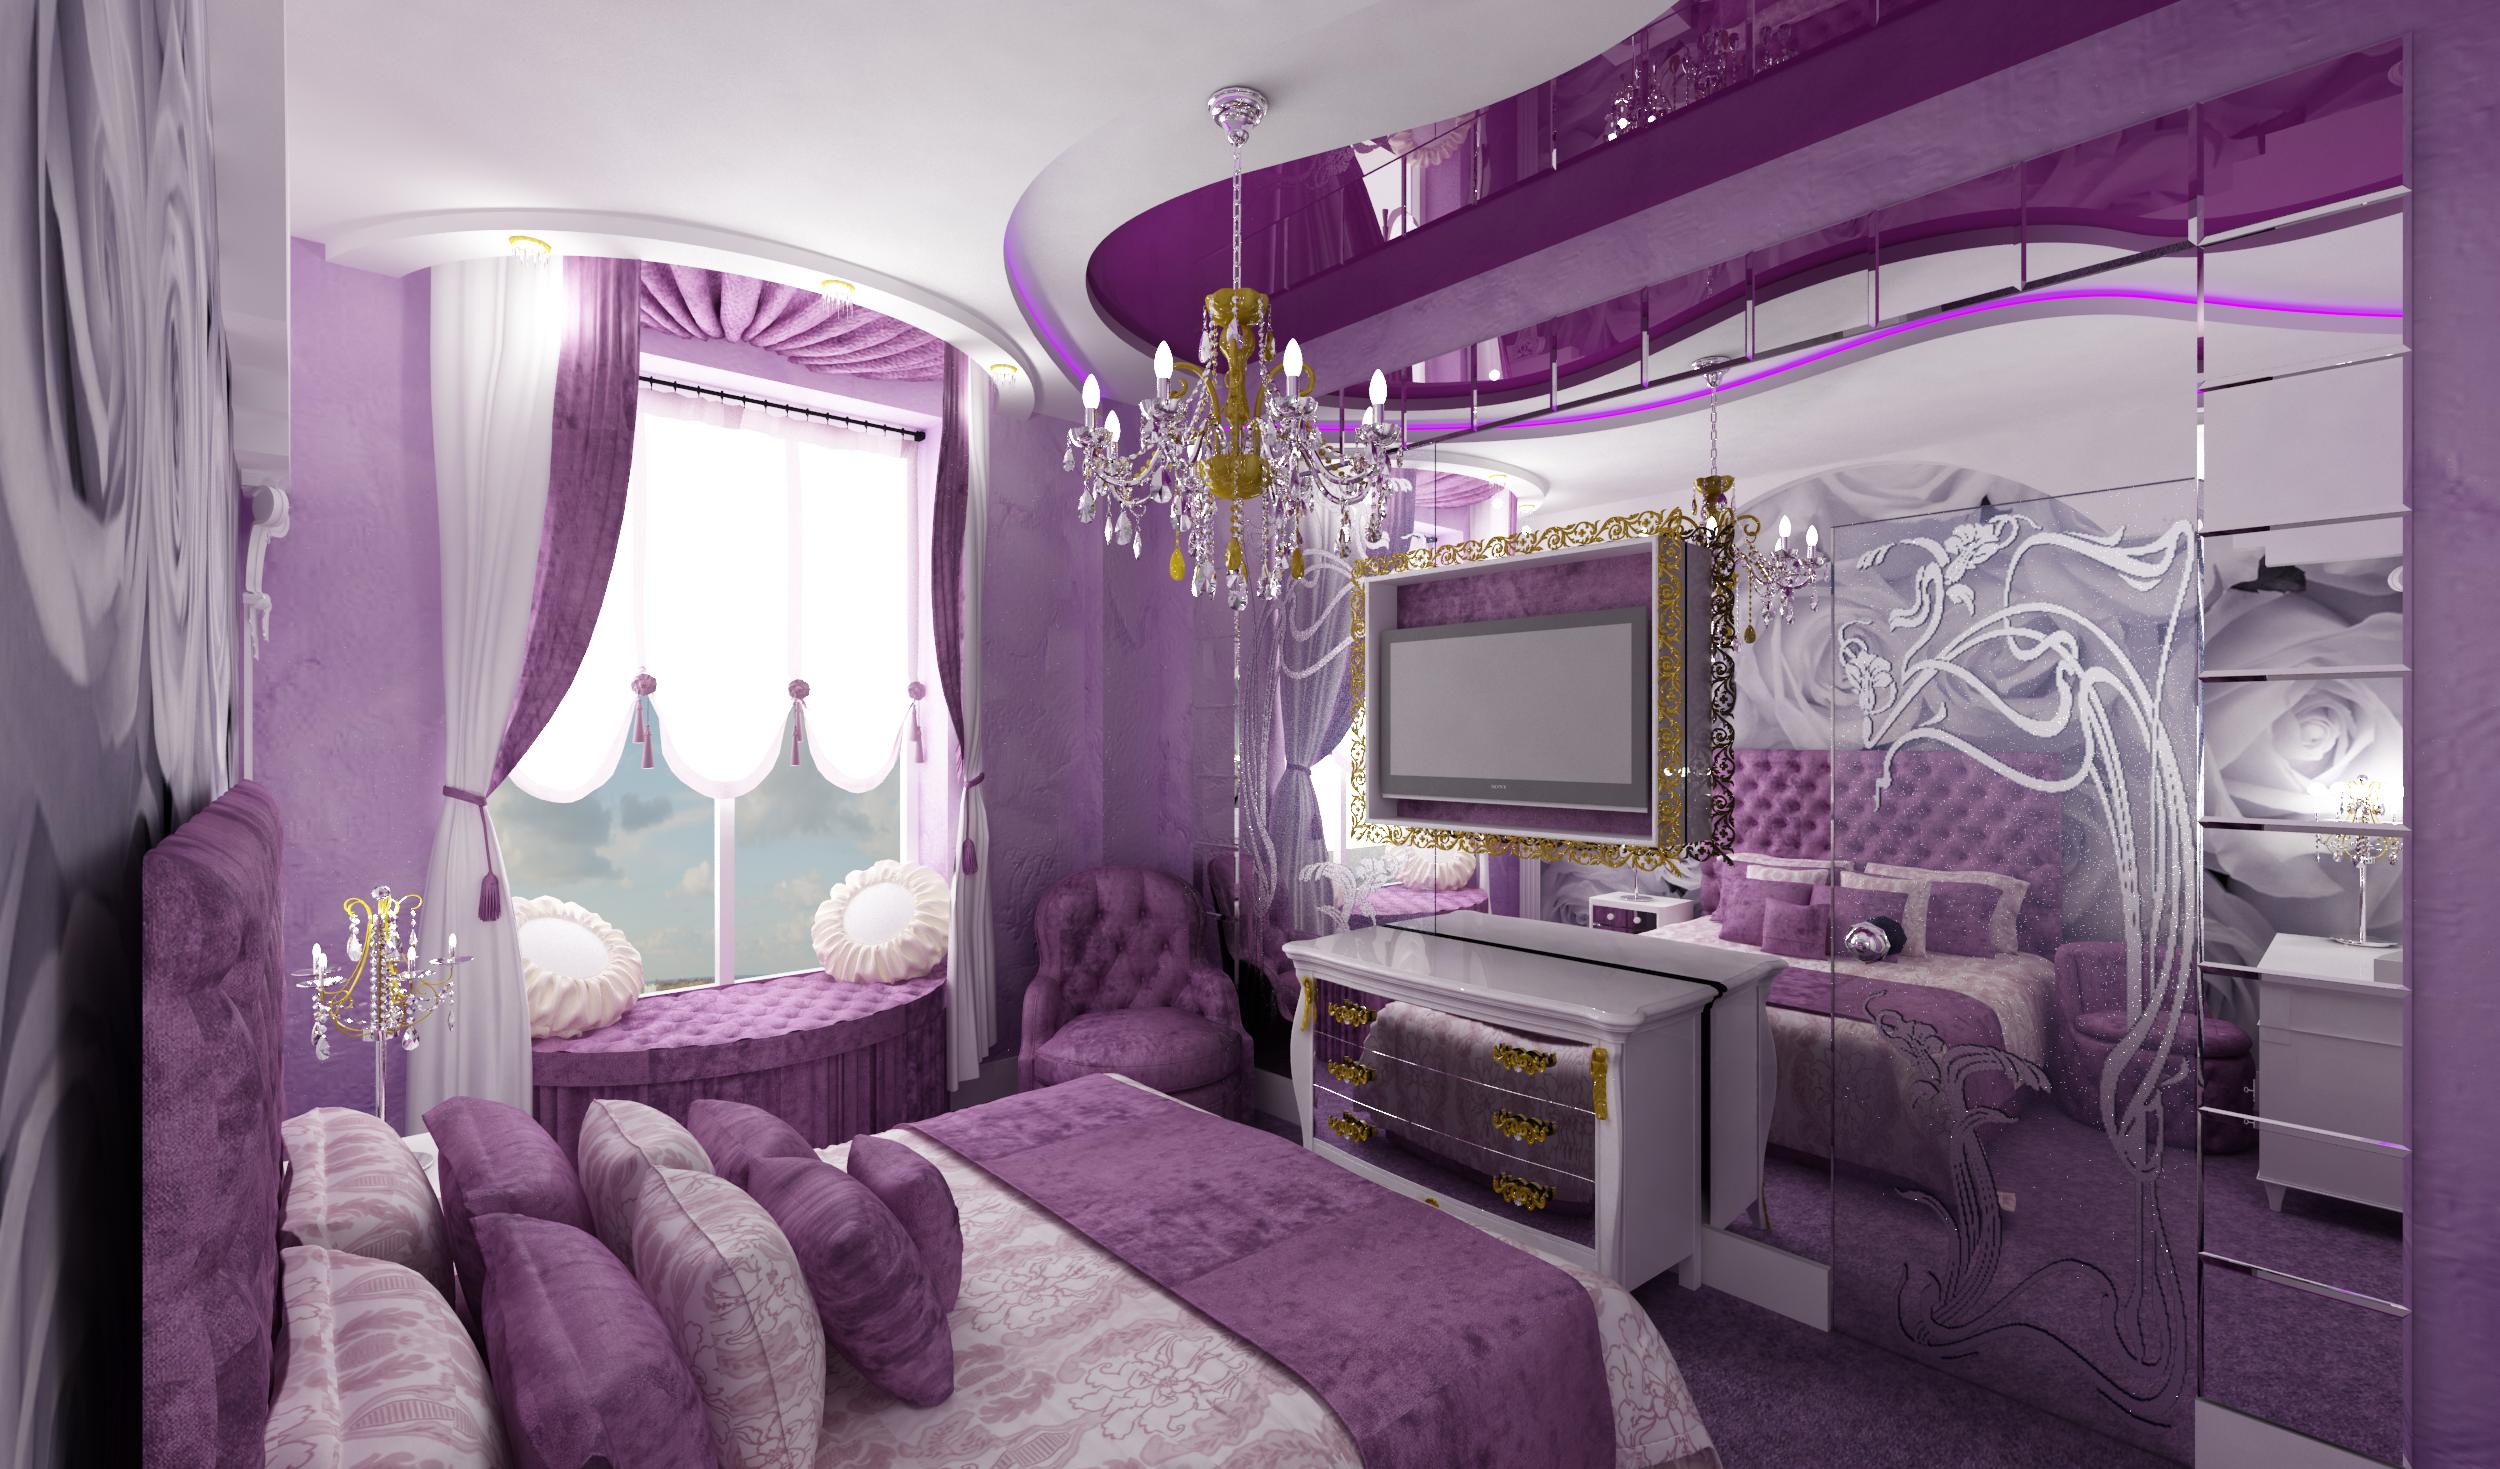 Красивая спальня в квартире фото: Спальня в квартире - 110 фото идей дизайна